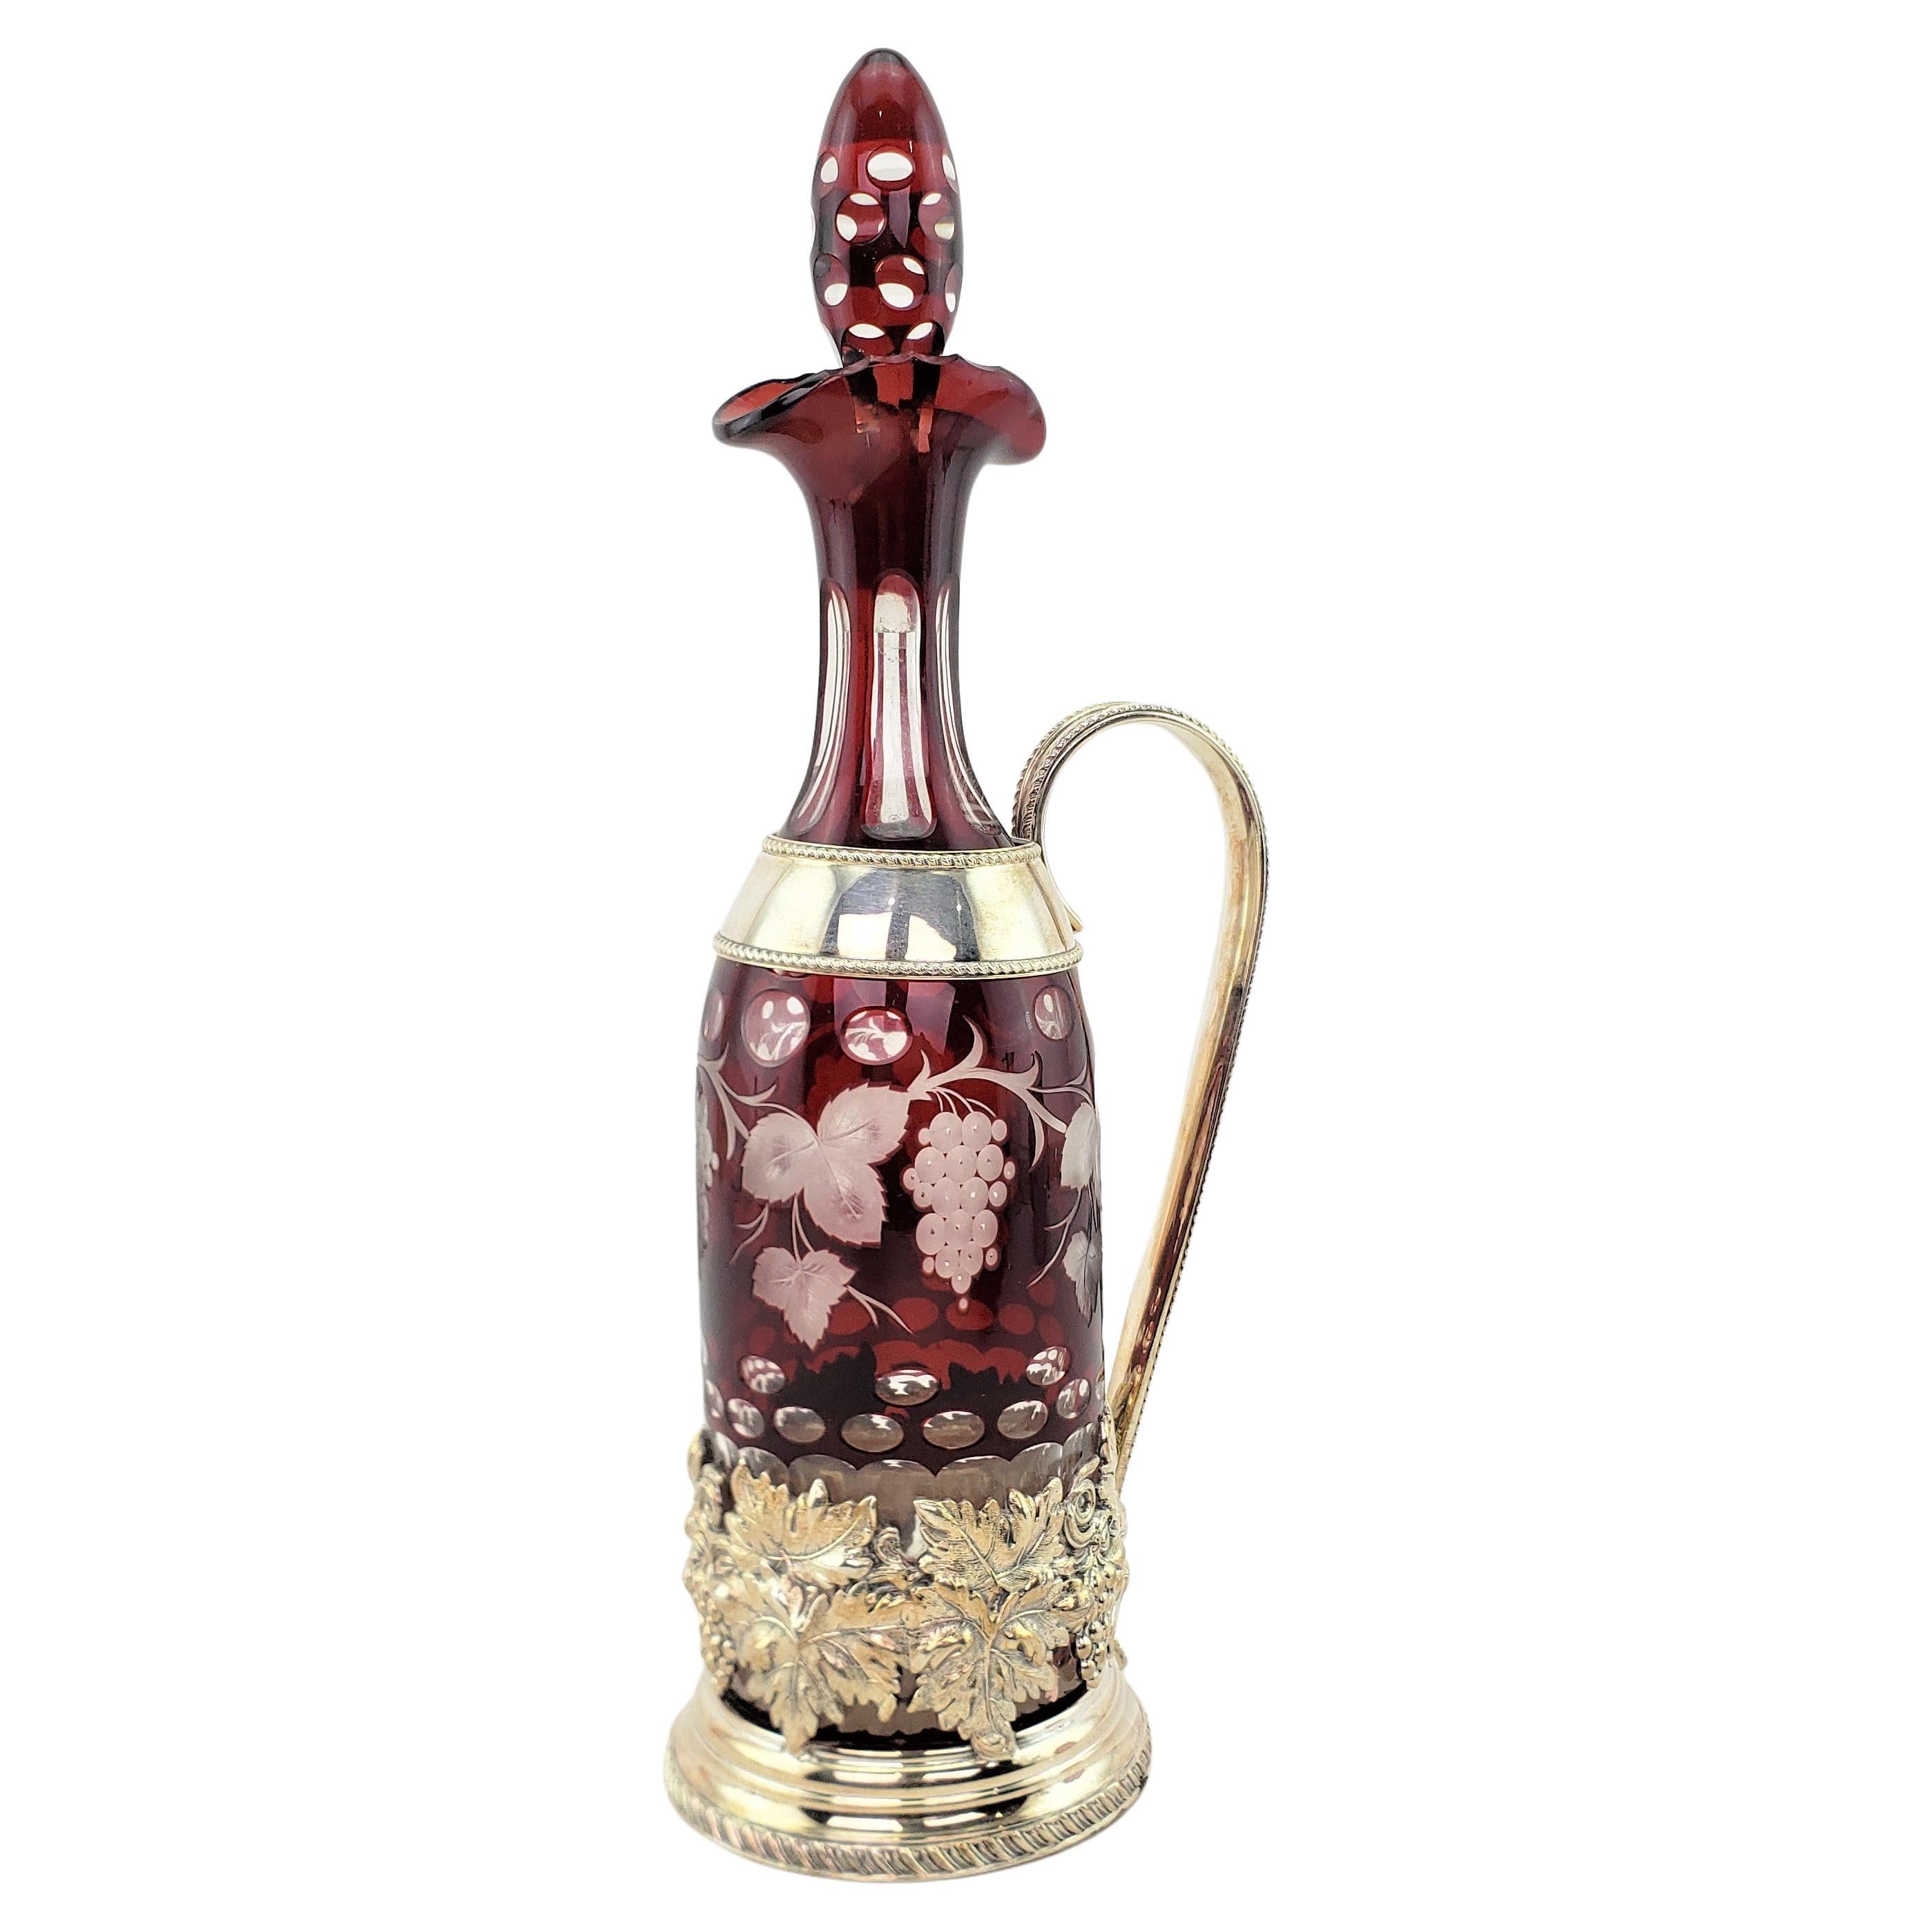 Carafe tchèque ancienne en forme de bouteille transparente taillée en rubis avec support en métal argenté orné